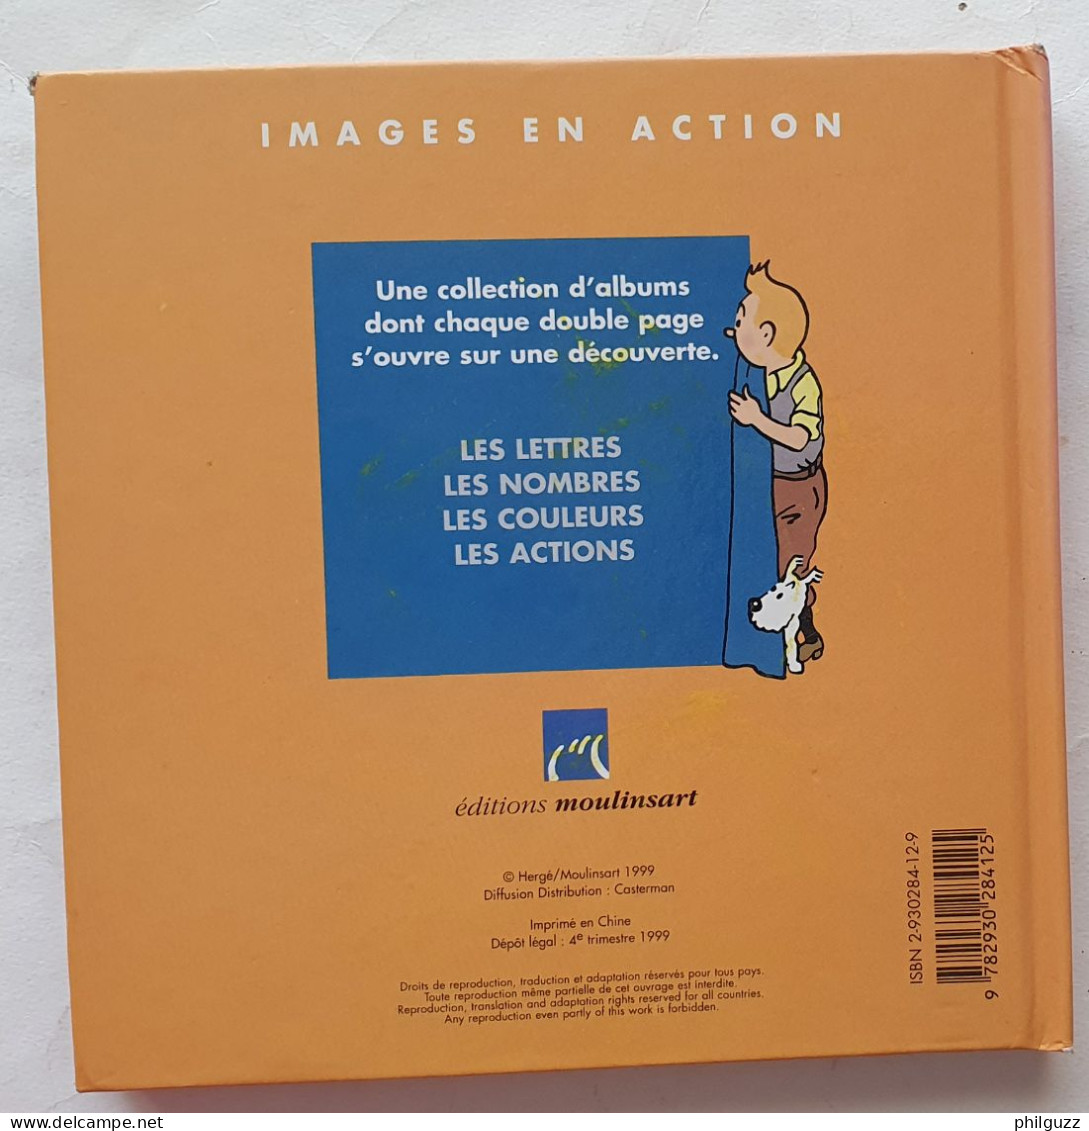 Images En Action LIVRE ALBUM TINTIN MOULINSART 1999 JE DECOUVRE LES ACTIONS - Hergé